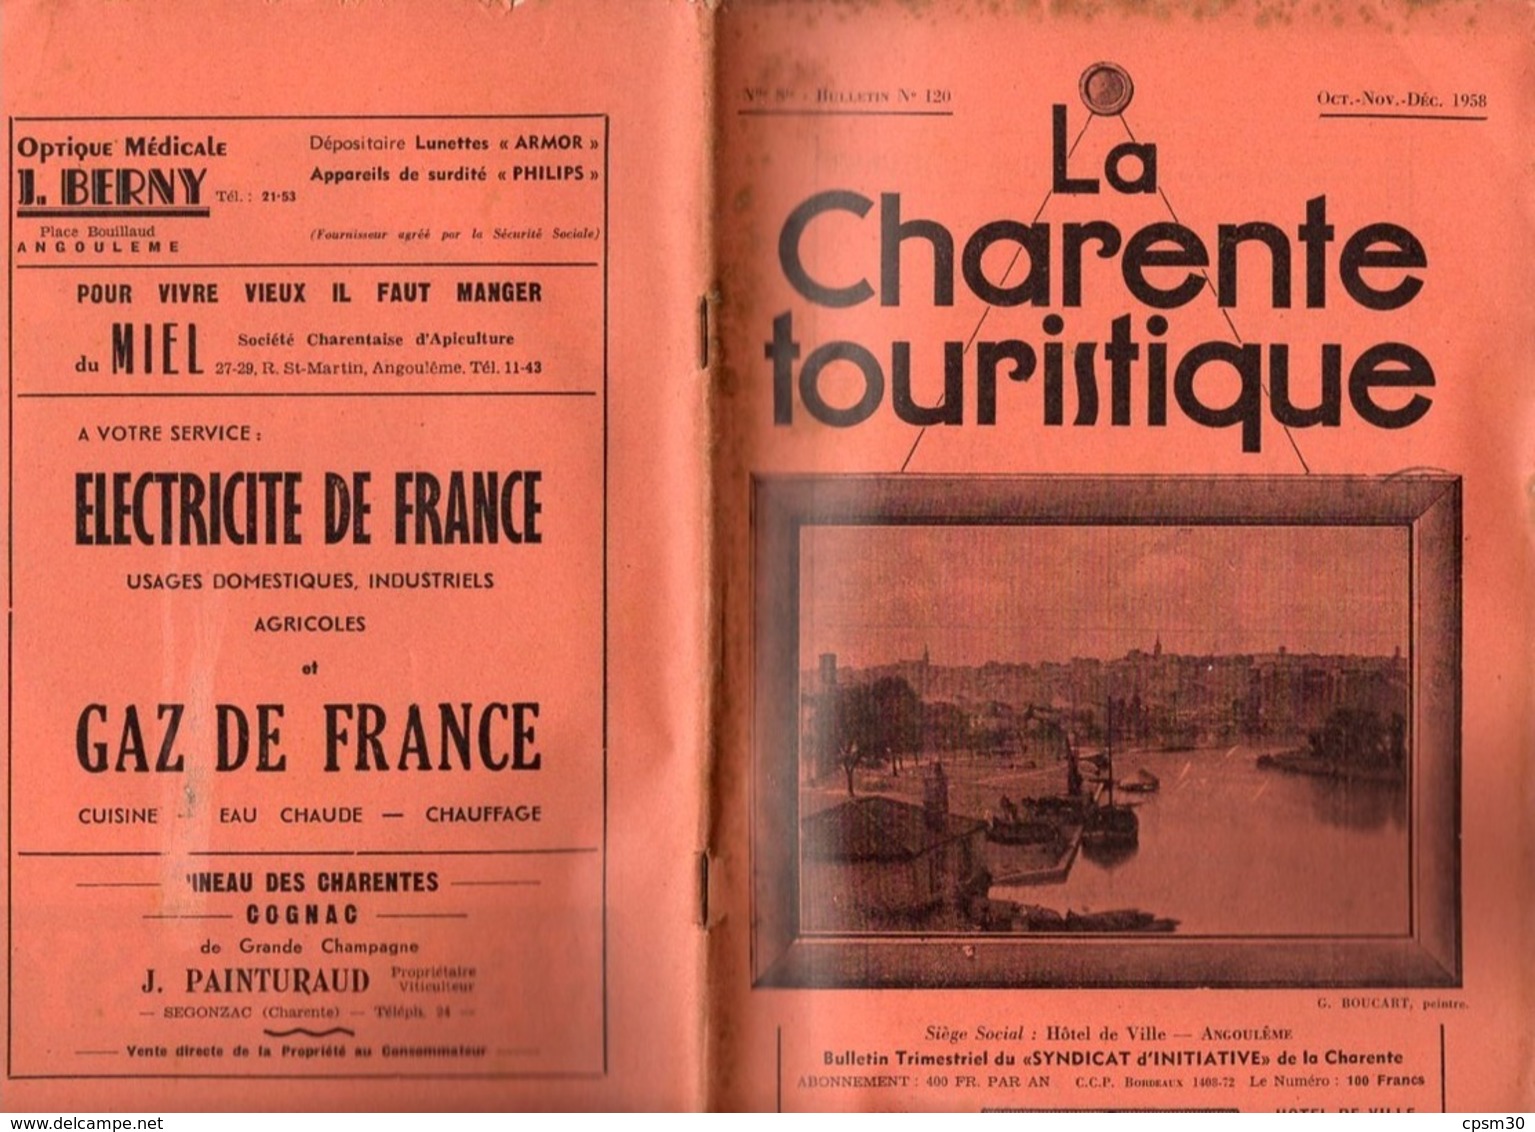 Revues "La Charente Touristique" six revues n° 105, 111, 117, 118, 120 et 123, 1955 à 1959